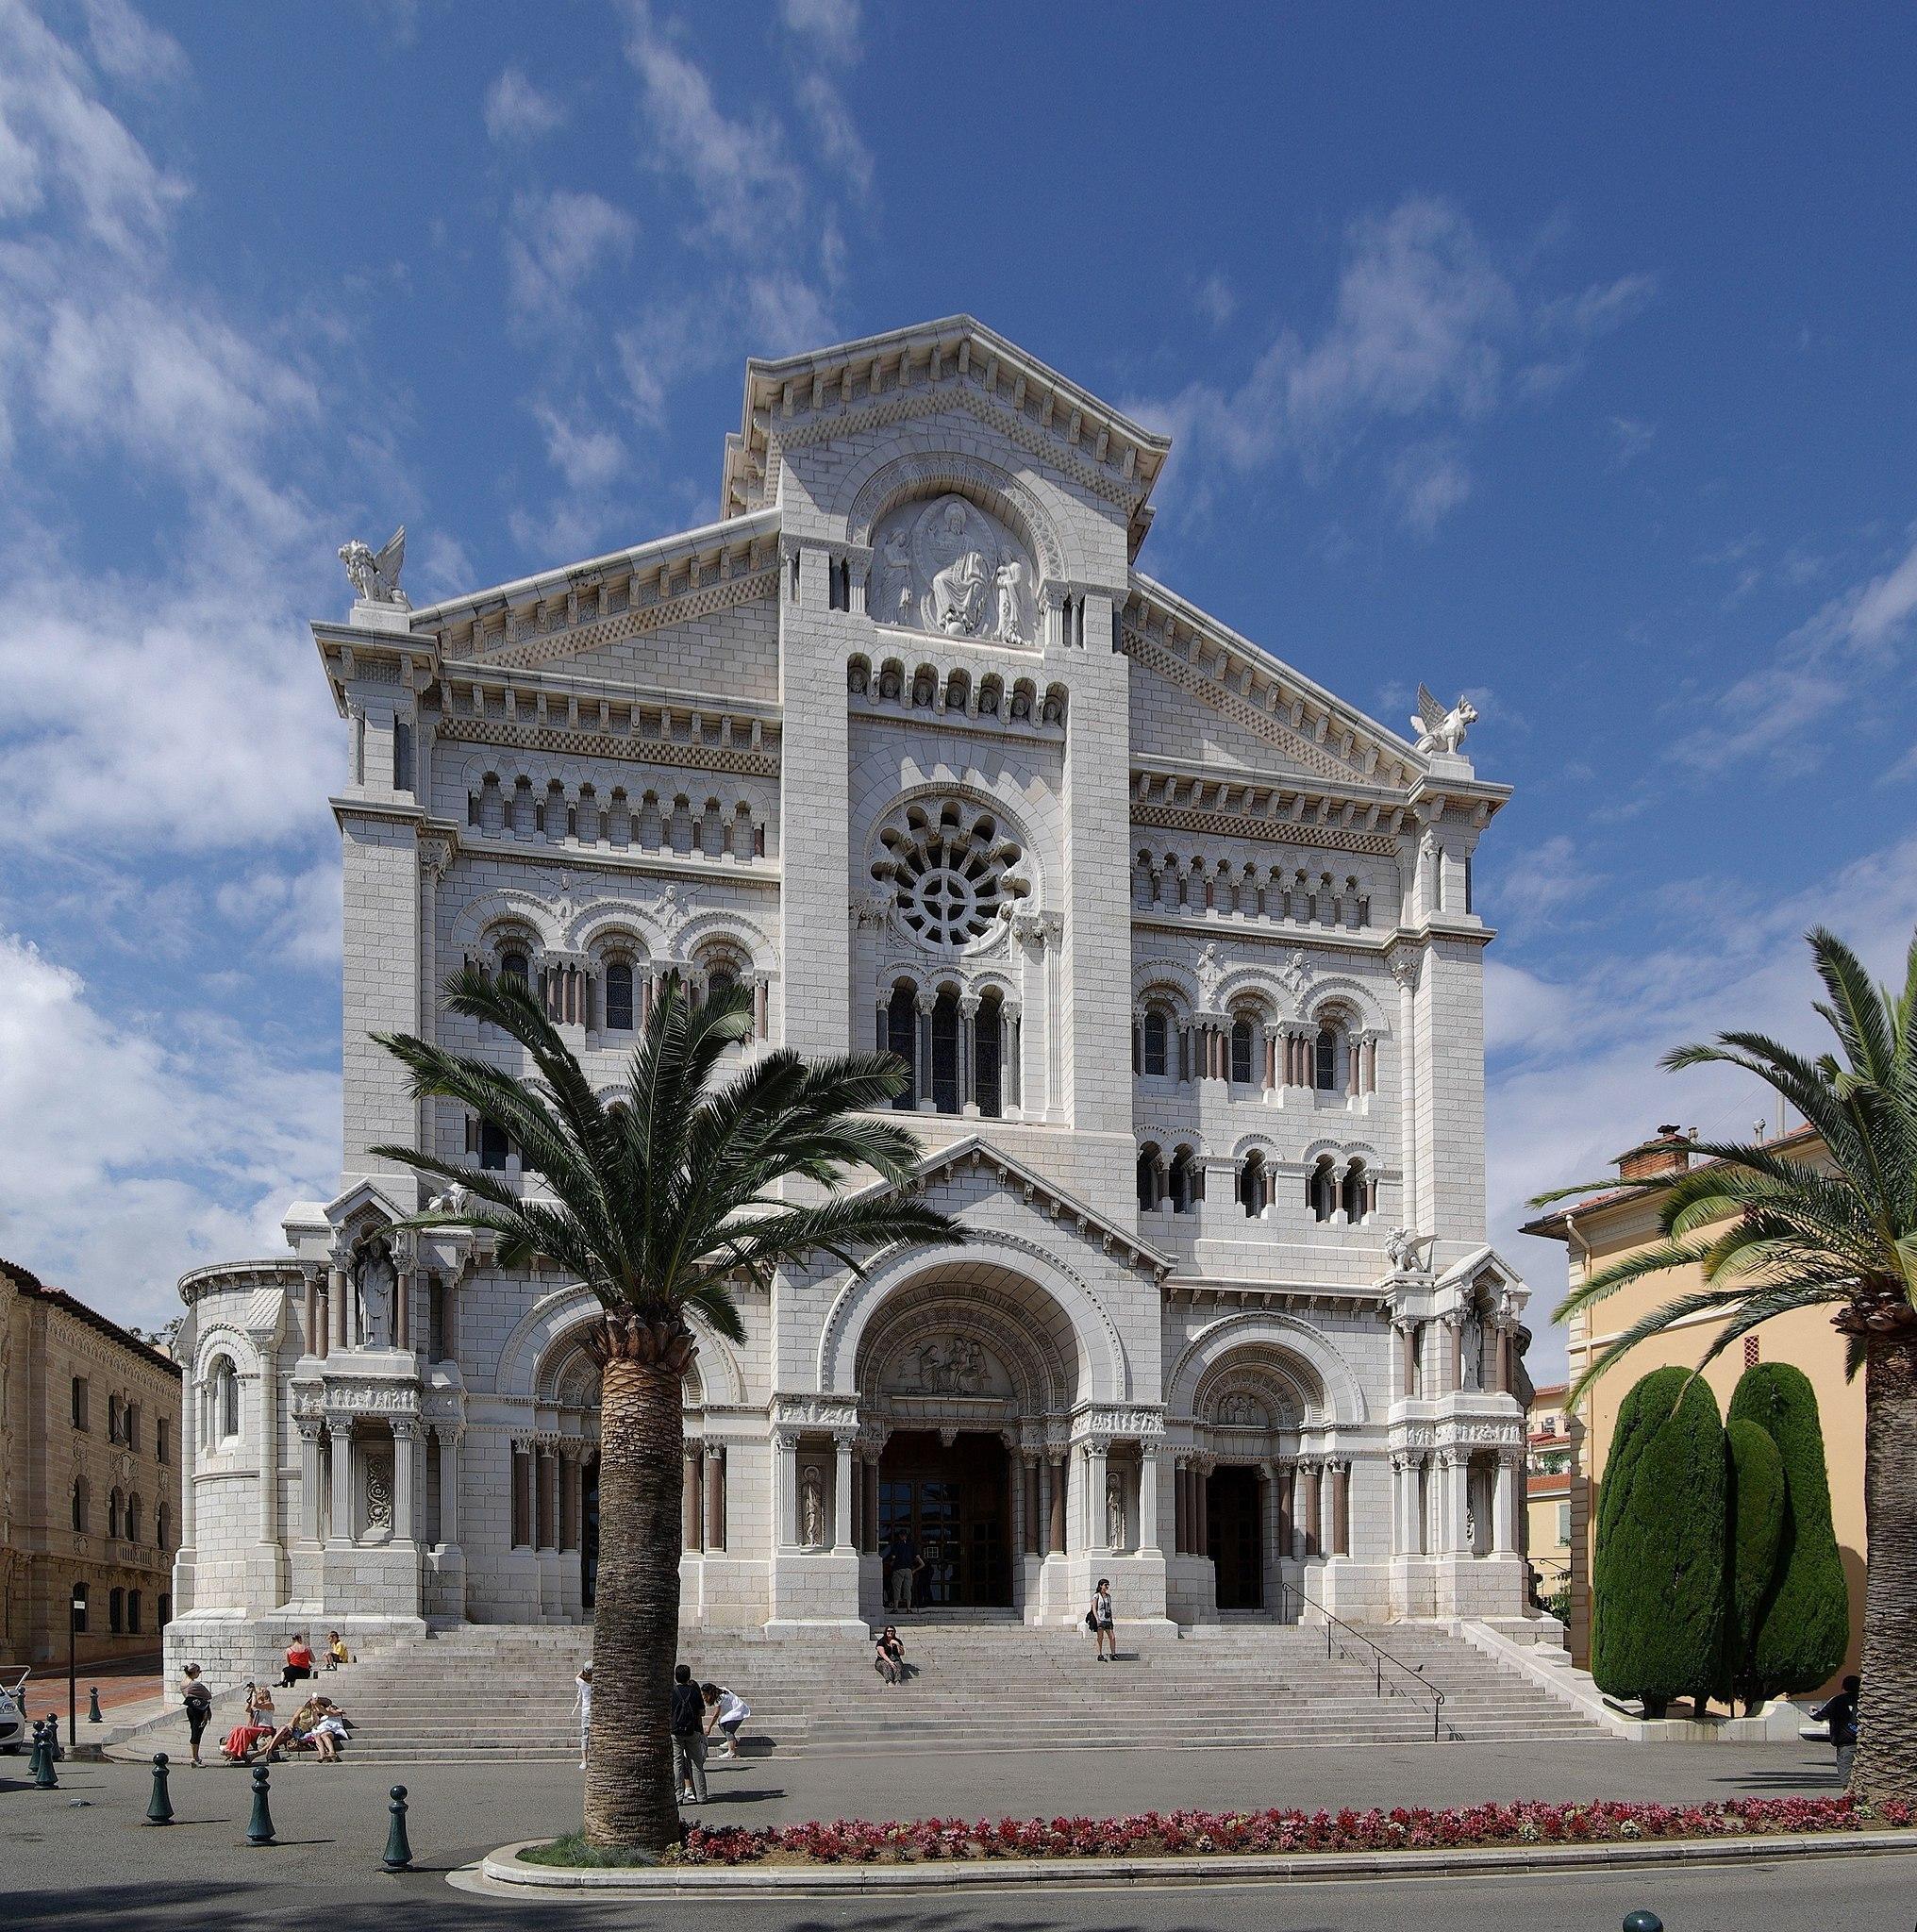 Μονακό - Καθεδρικός Ναός του Αγίου Νικολάου στο Μονακό4a2